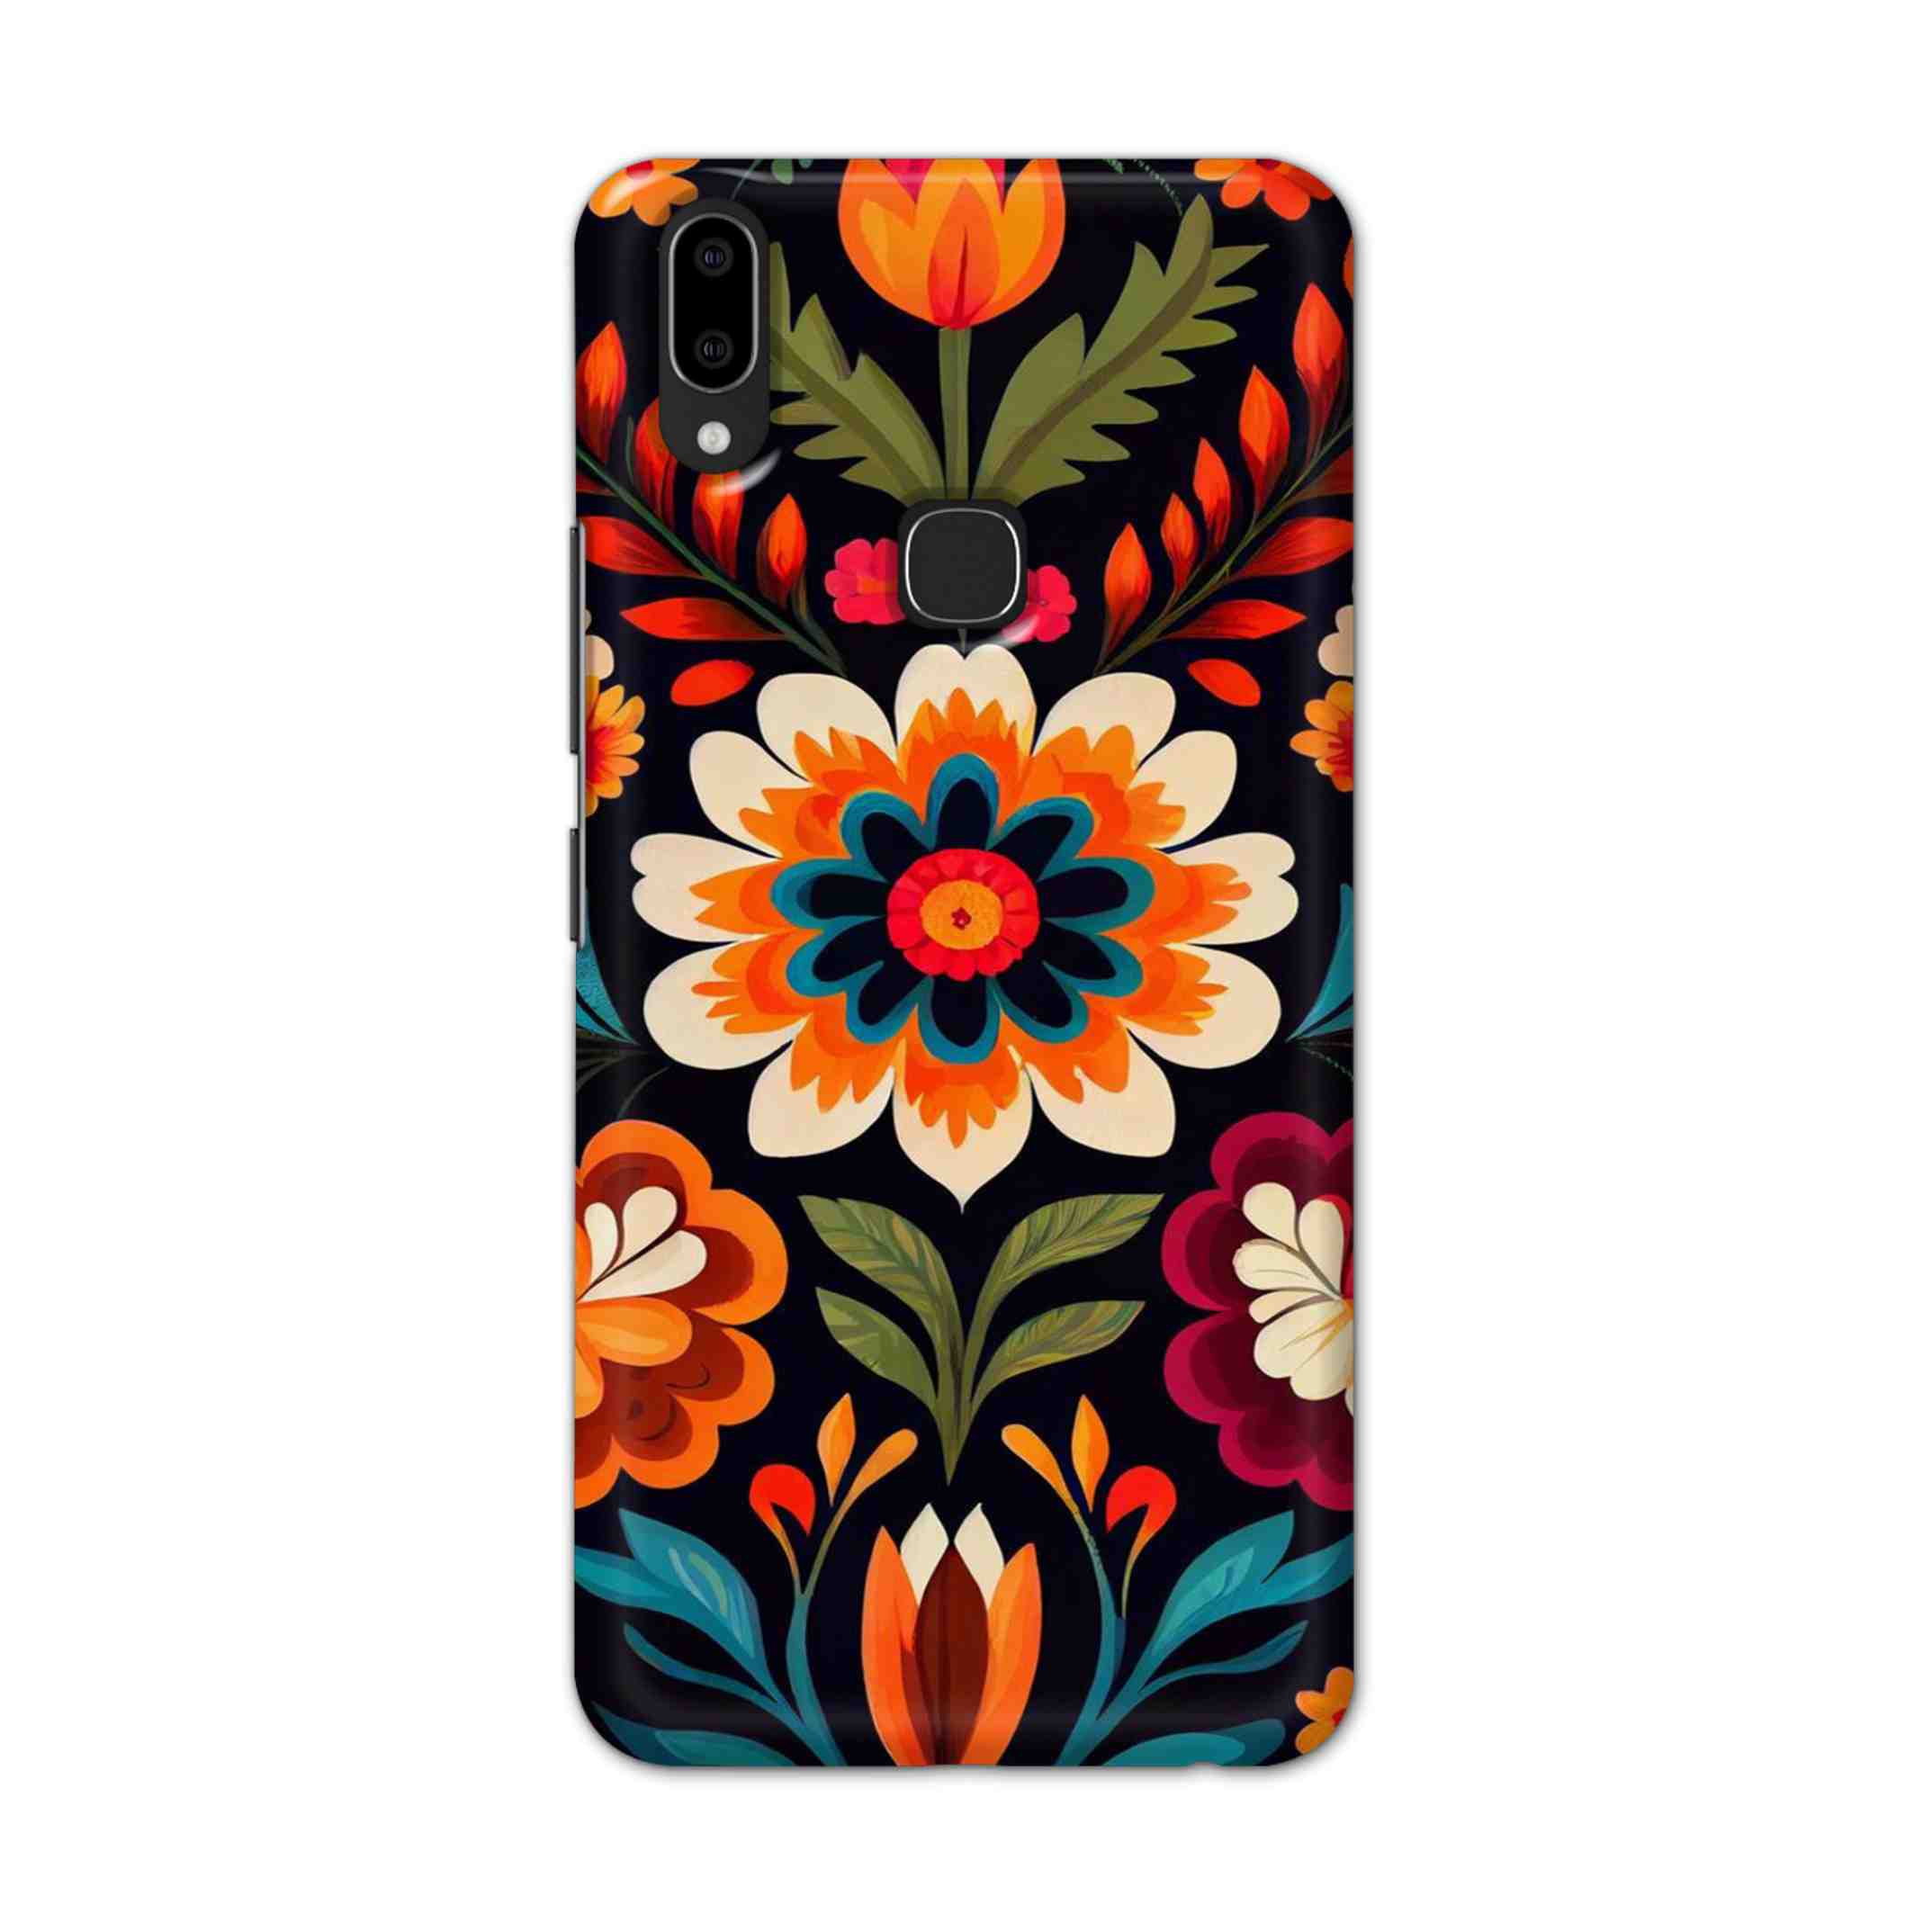 Buy Flower Hard Back Mobile Phone Case Cover For Vivo V9 / V9 Youth Online